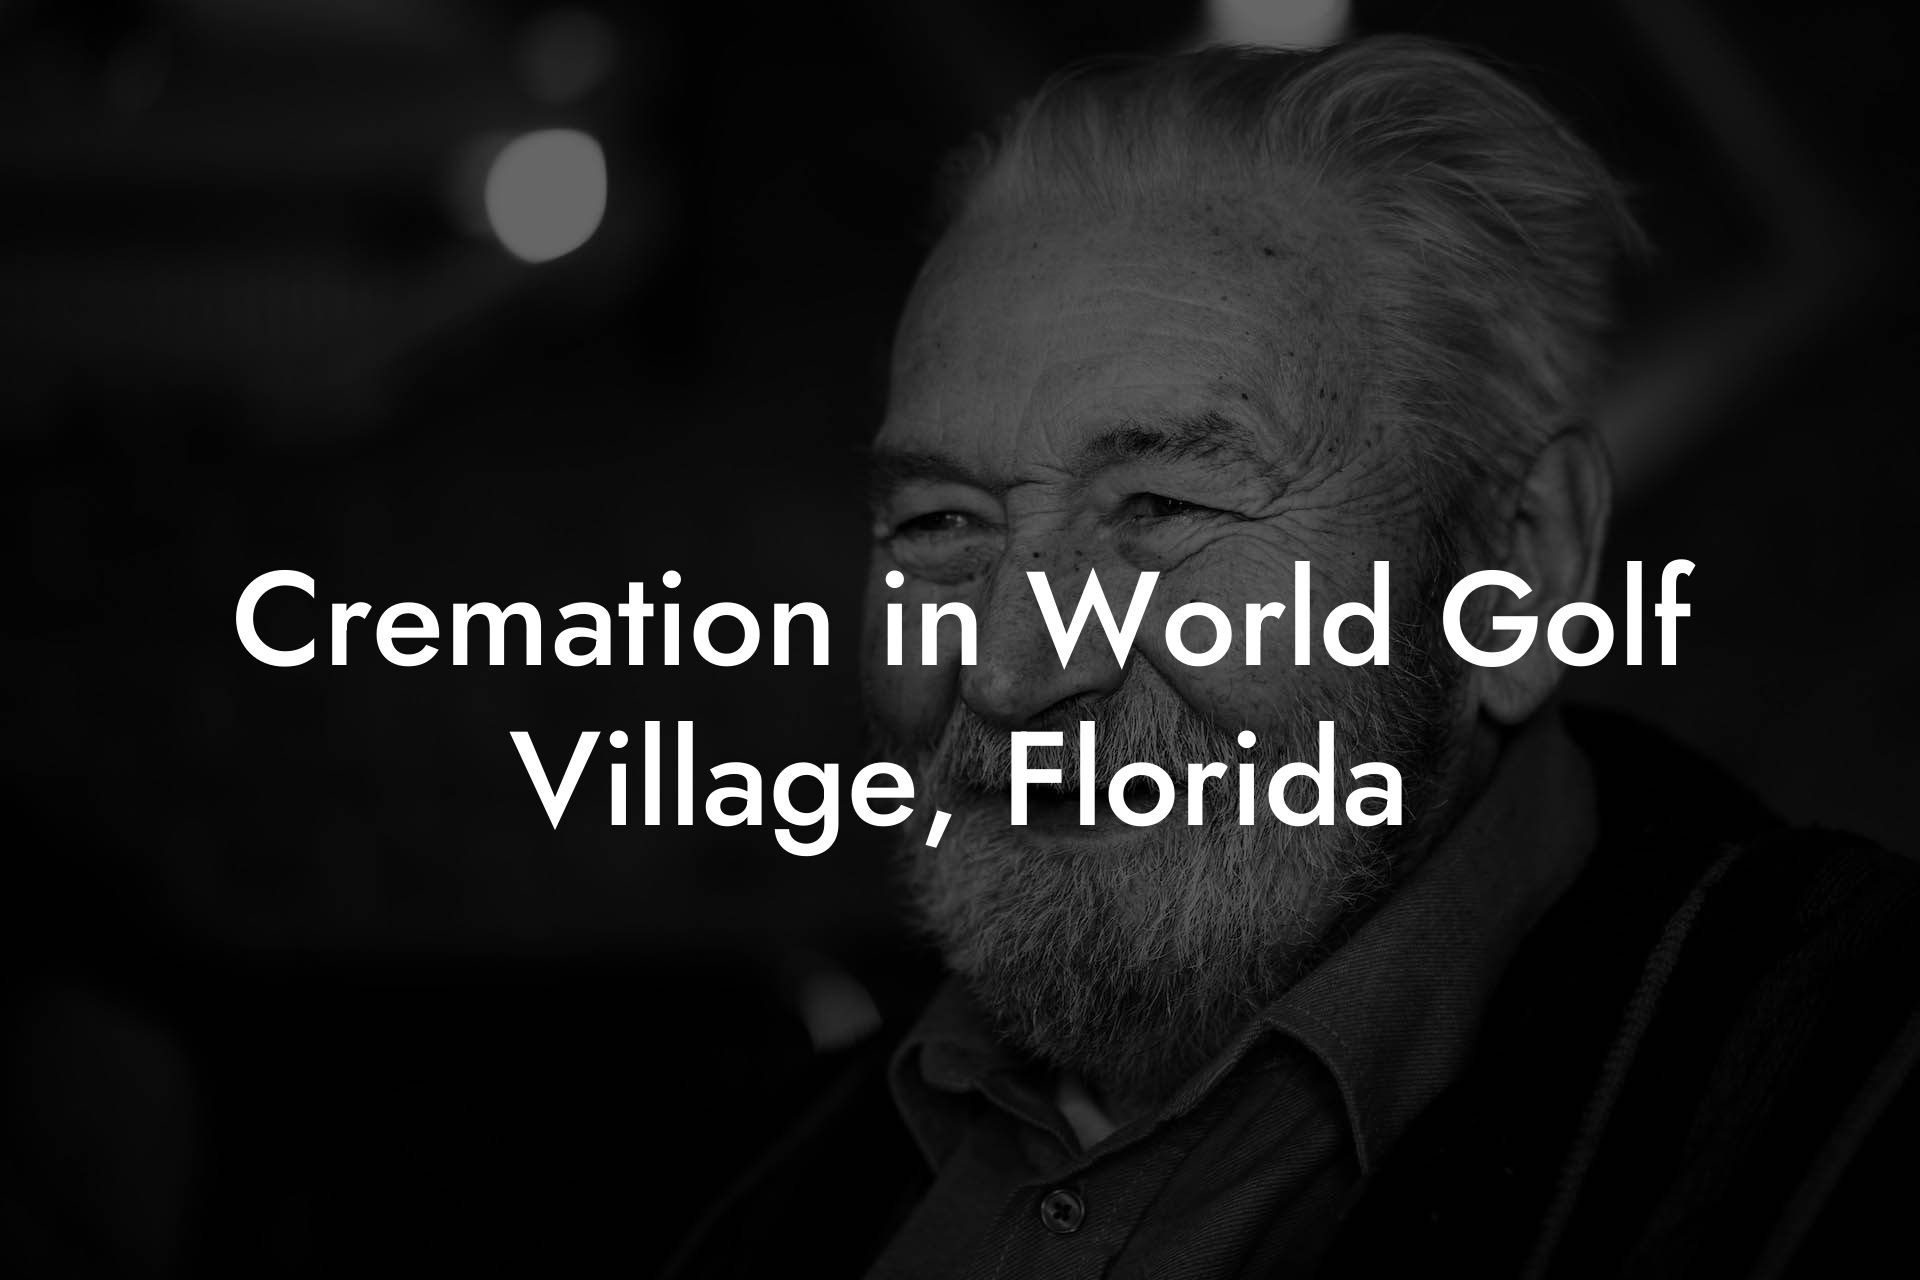 Cremation in World Golf Village, Florida